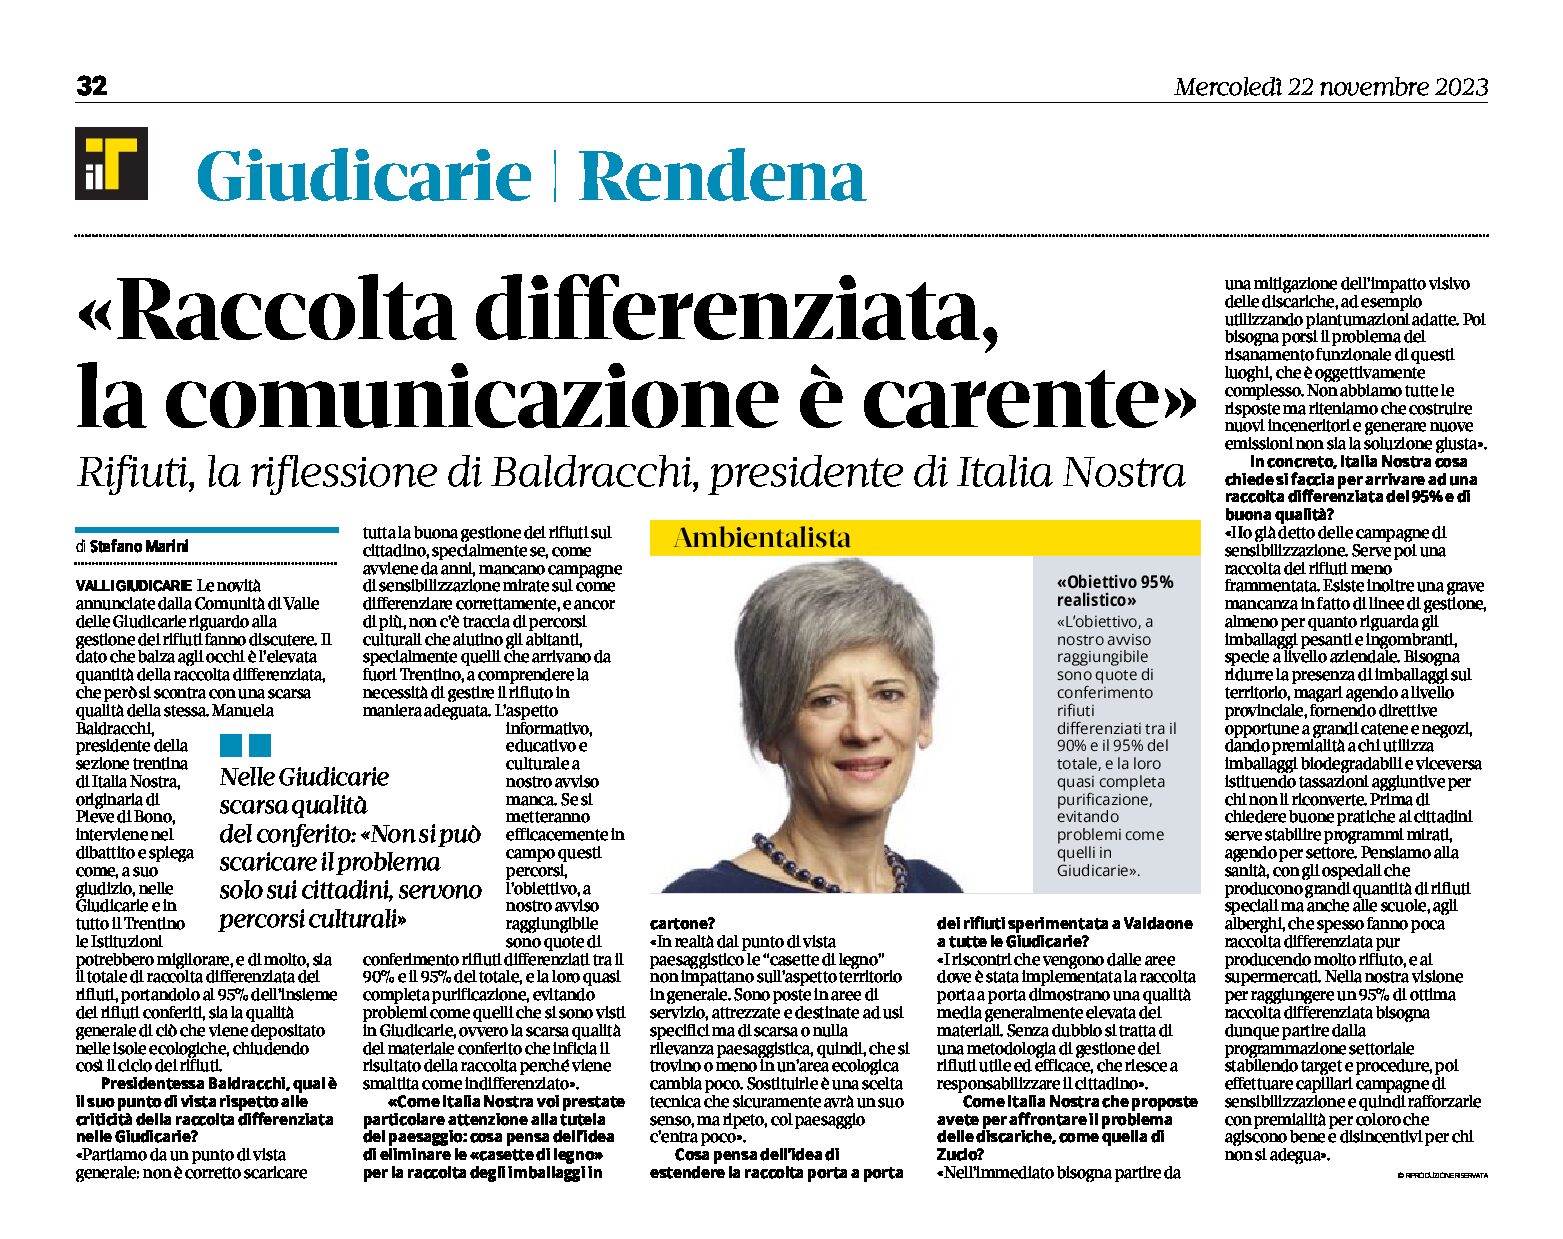 Trentino: raccolta differenziata, comunicazione carente, intervista a Baldracchi presidente di Italia Nostra